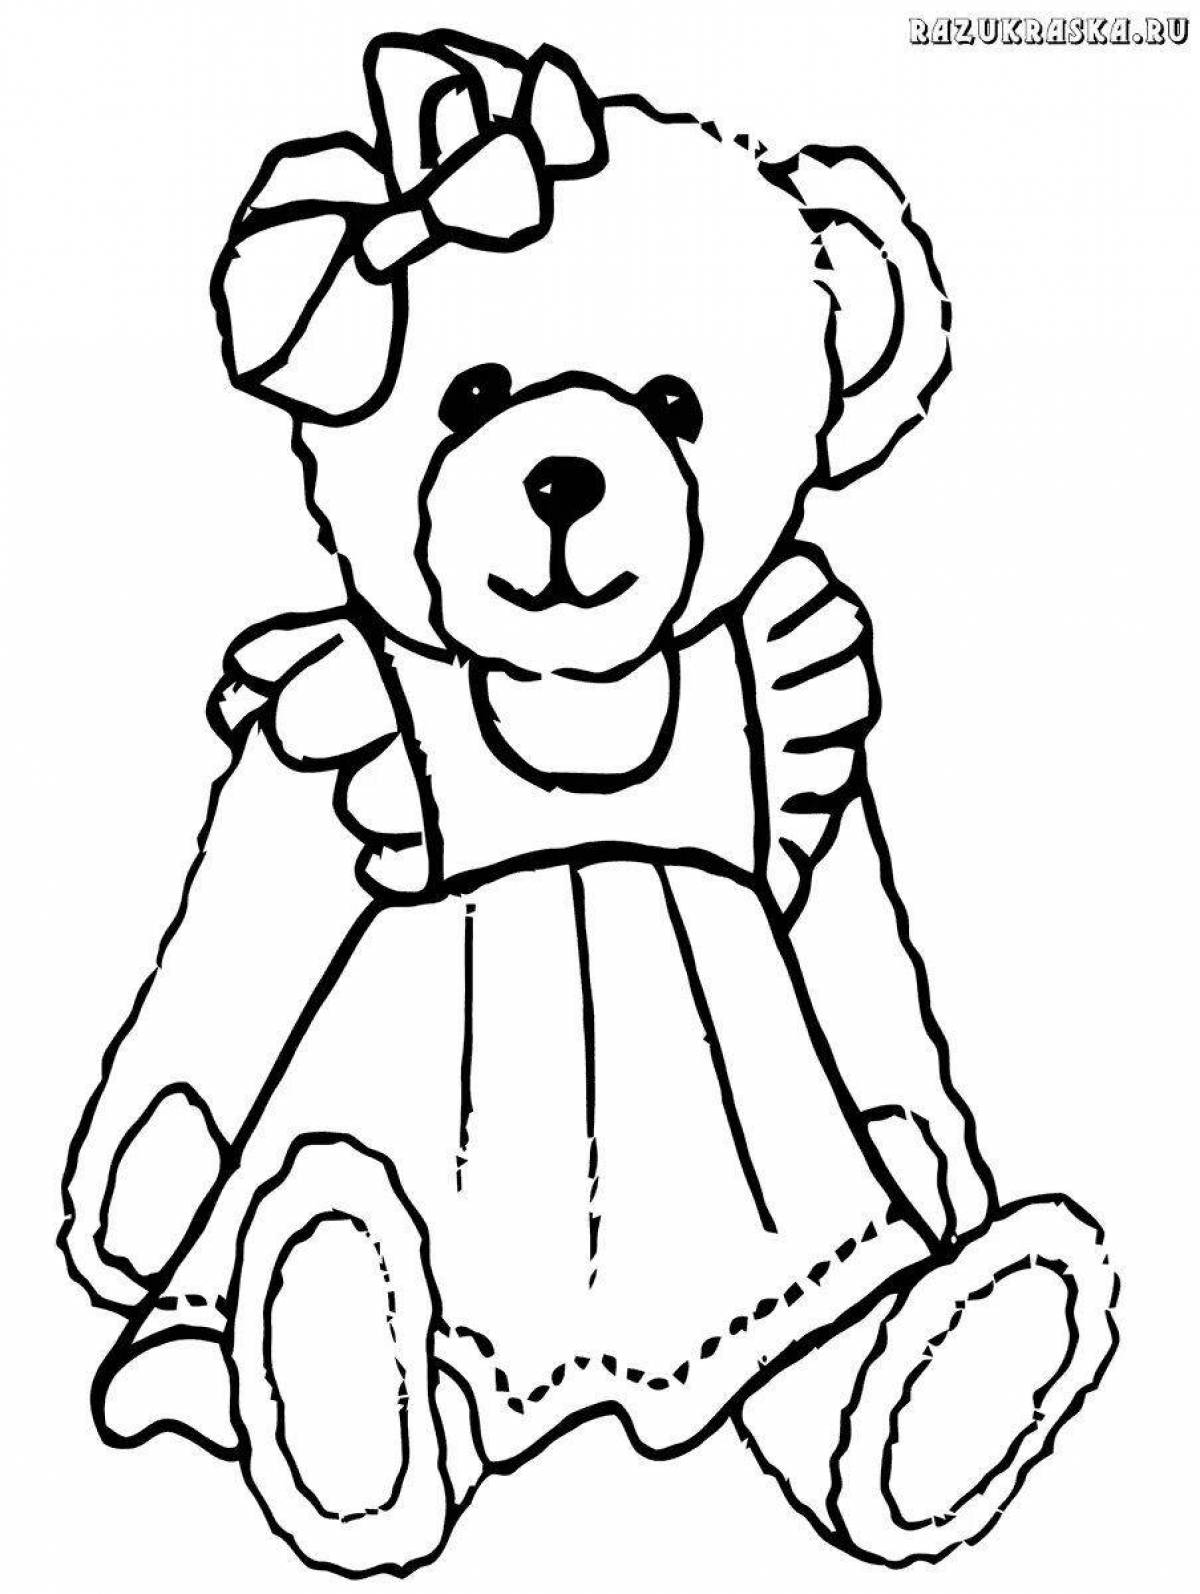 Coloring huggable teddy bear for girls